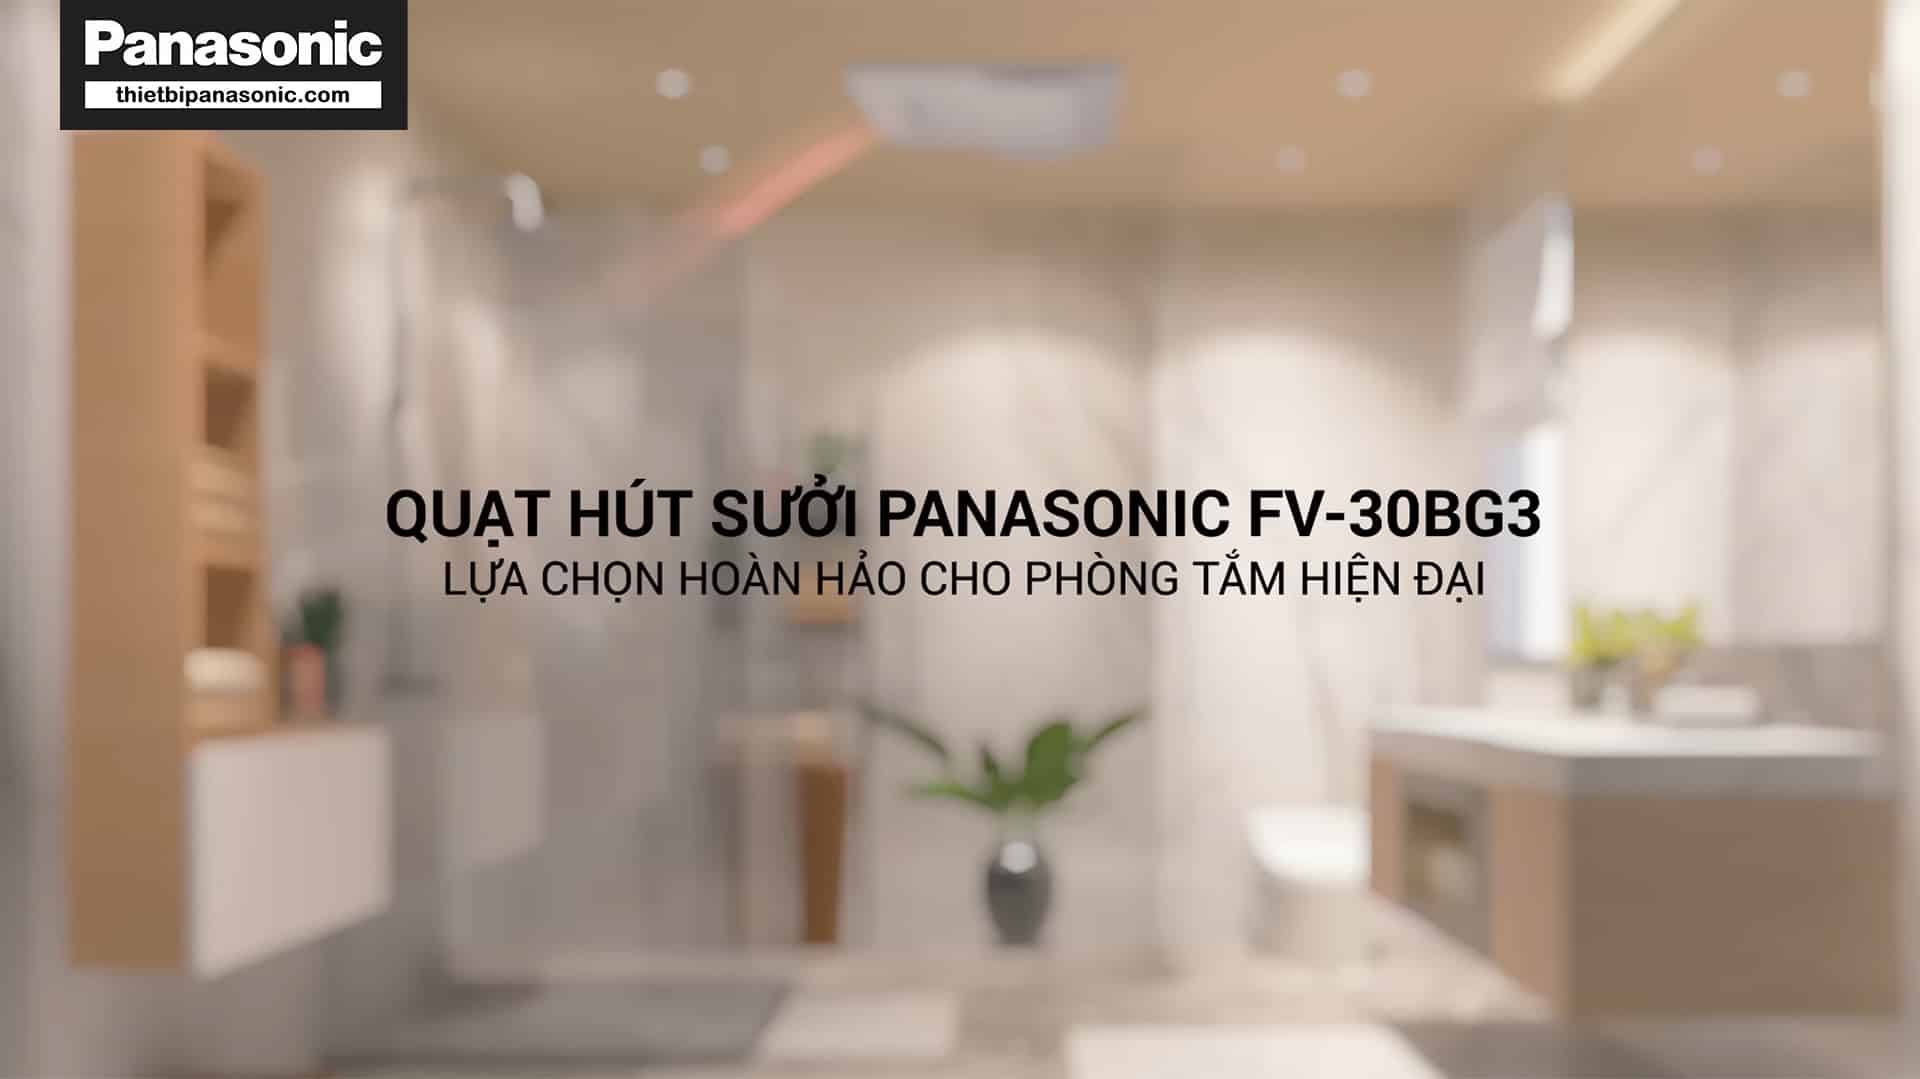 Quạt hút sưởi Panasonic Panasonic FV-30BG3 là sự lựa chọn hoàn hảo cho phòng tắm hiện đại